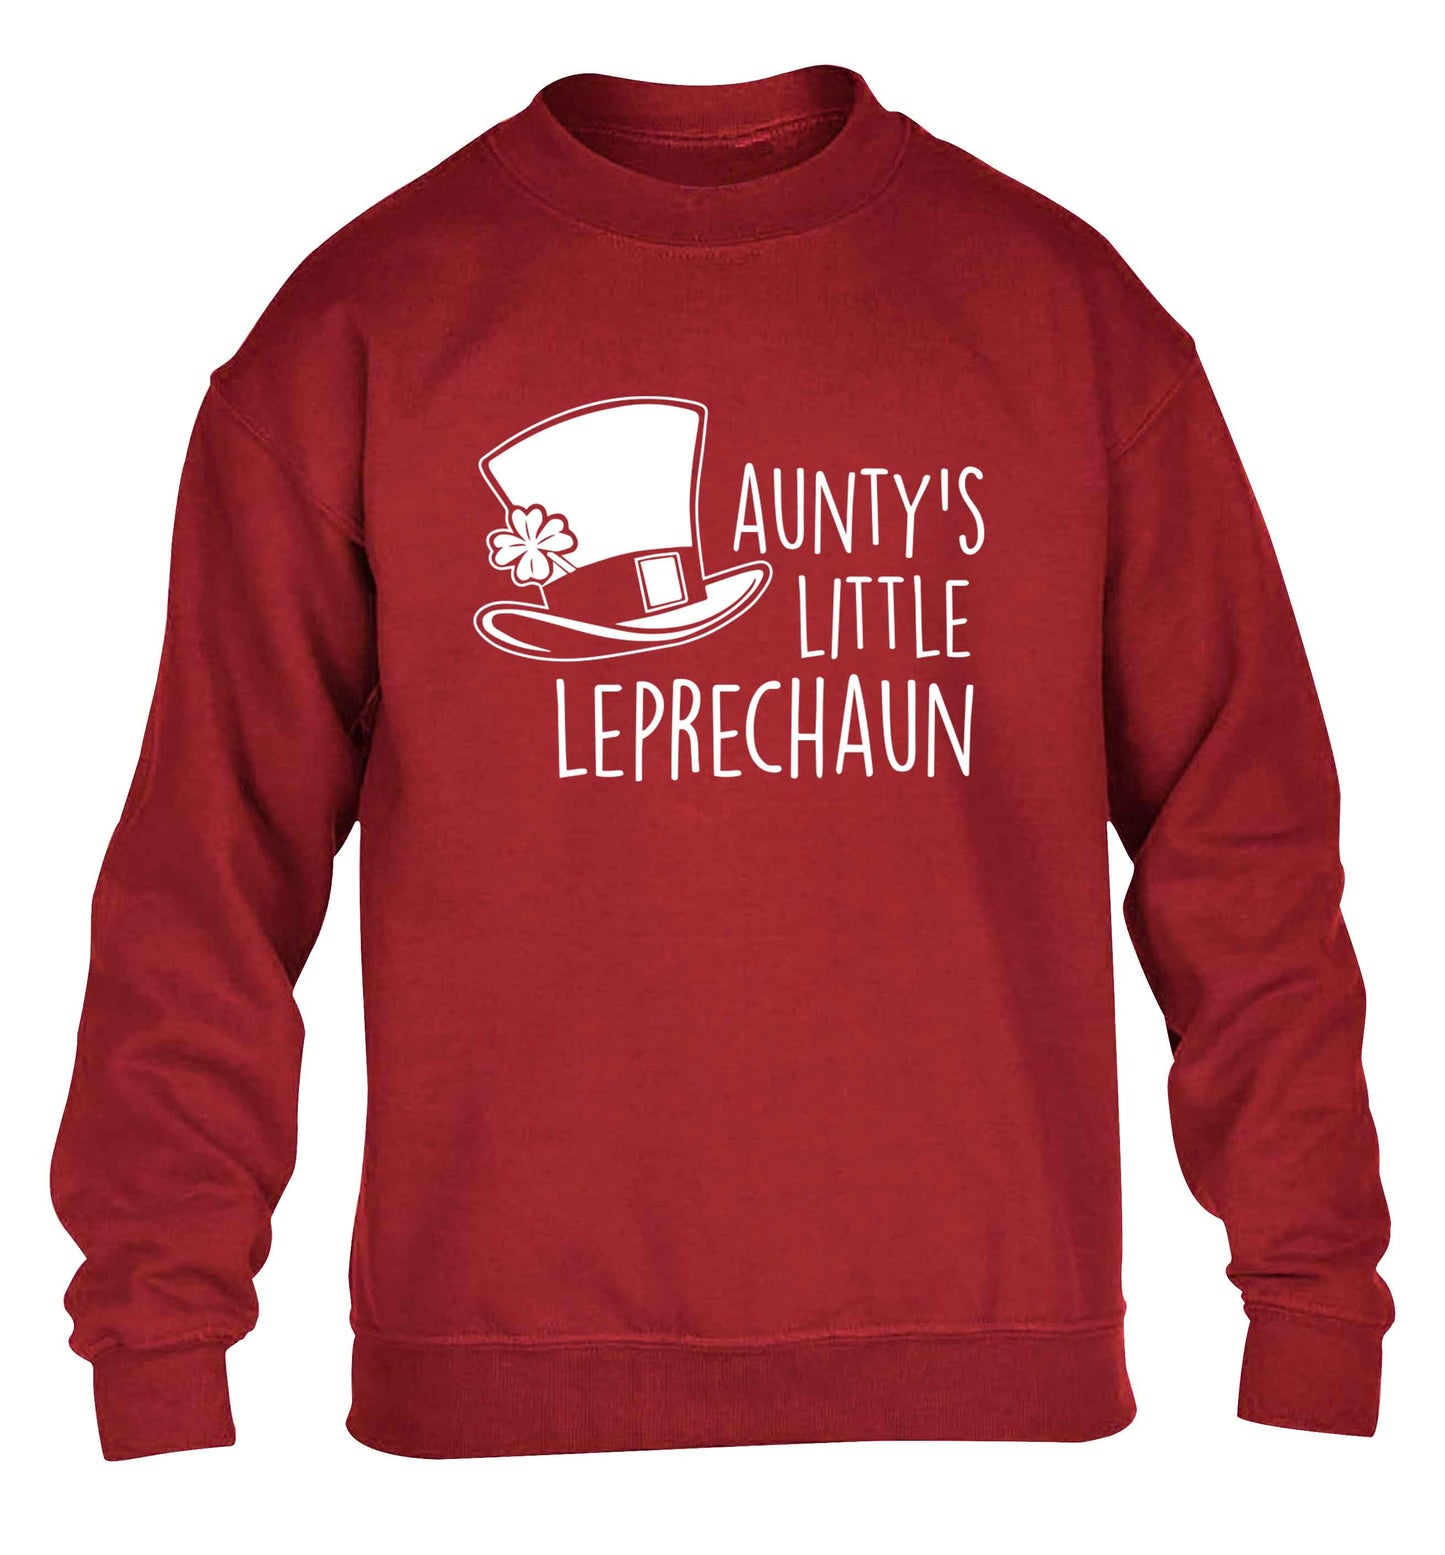 Aunty's little leprechaun children's grey sweater 12-13 Years